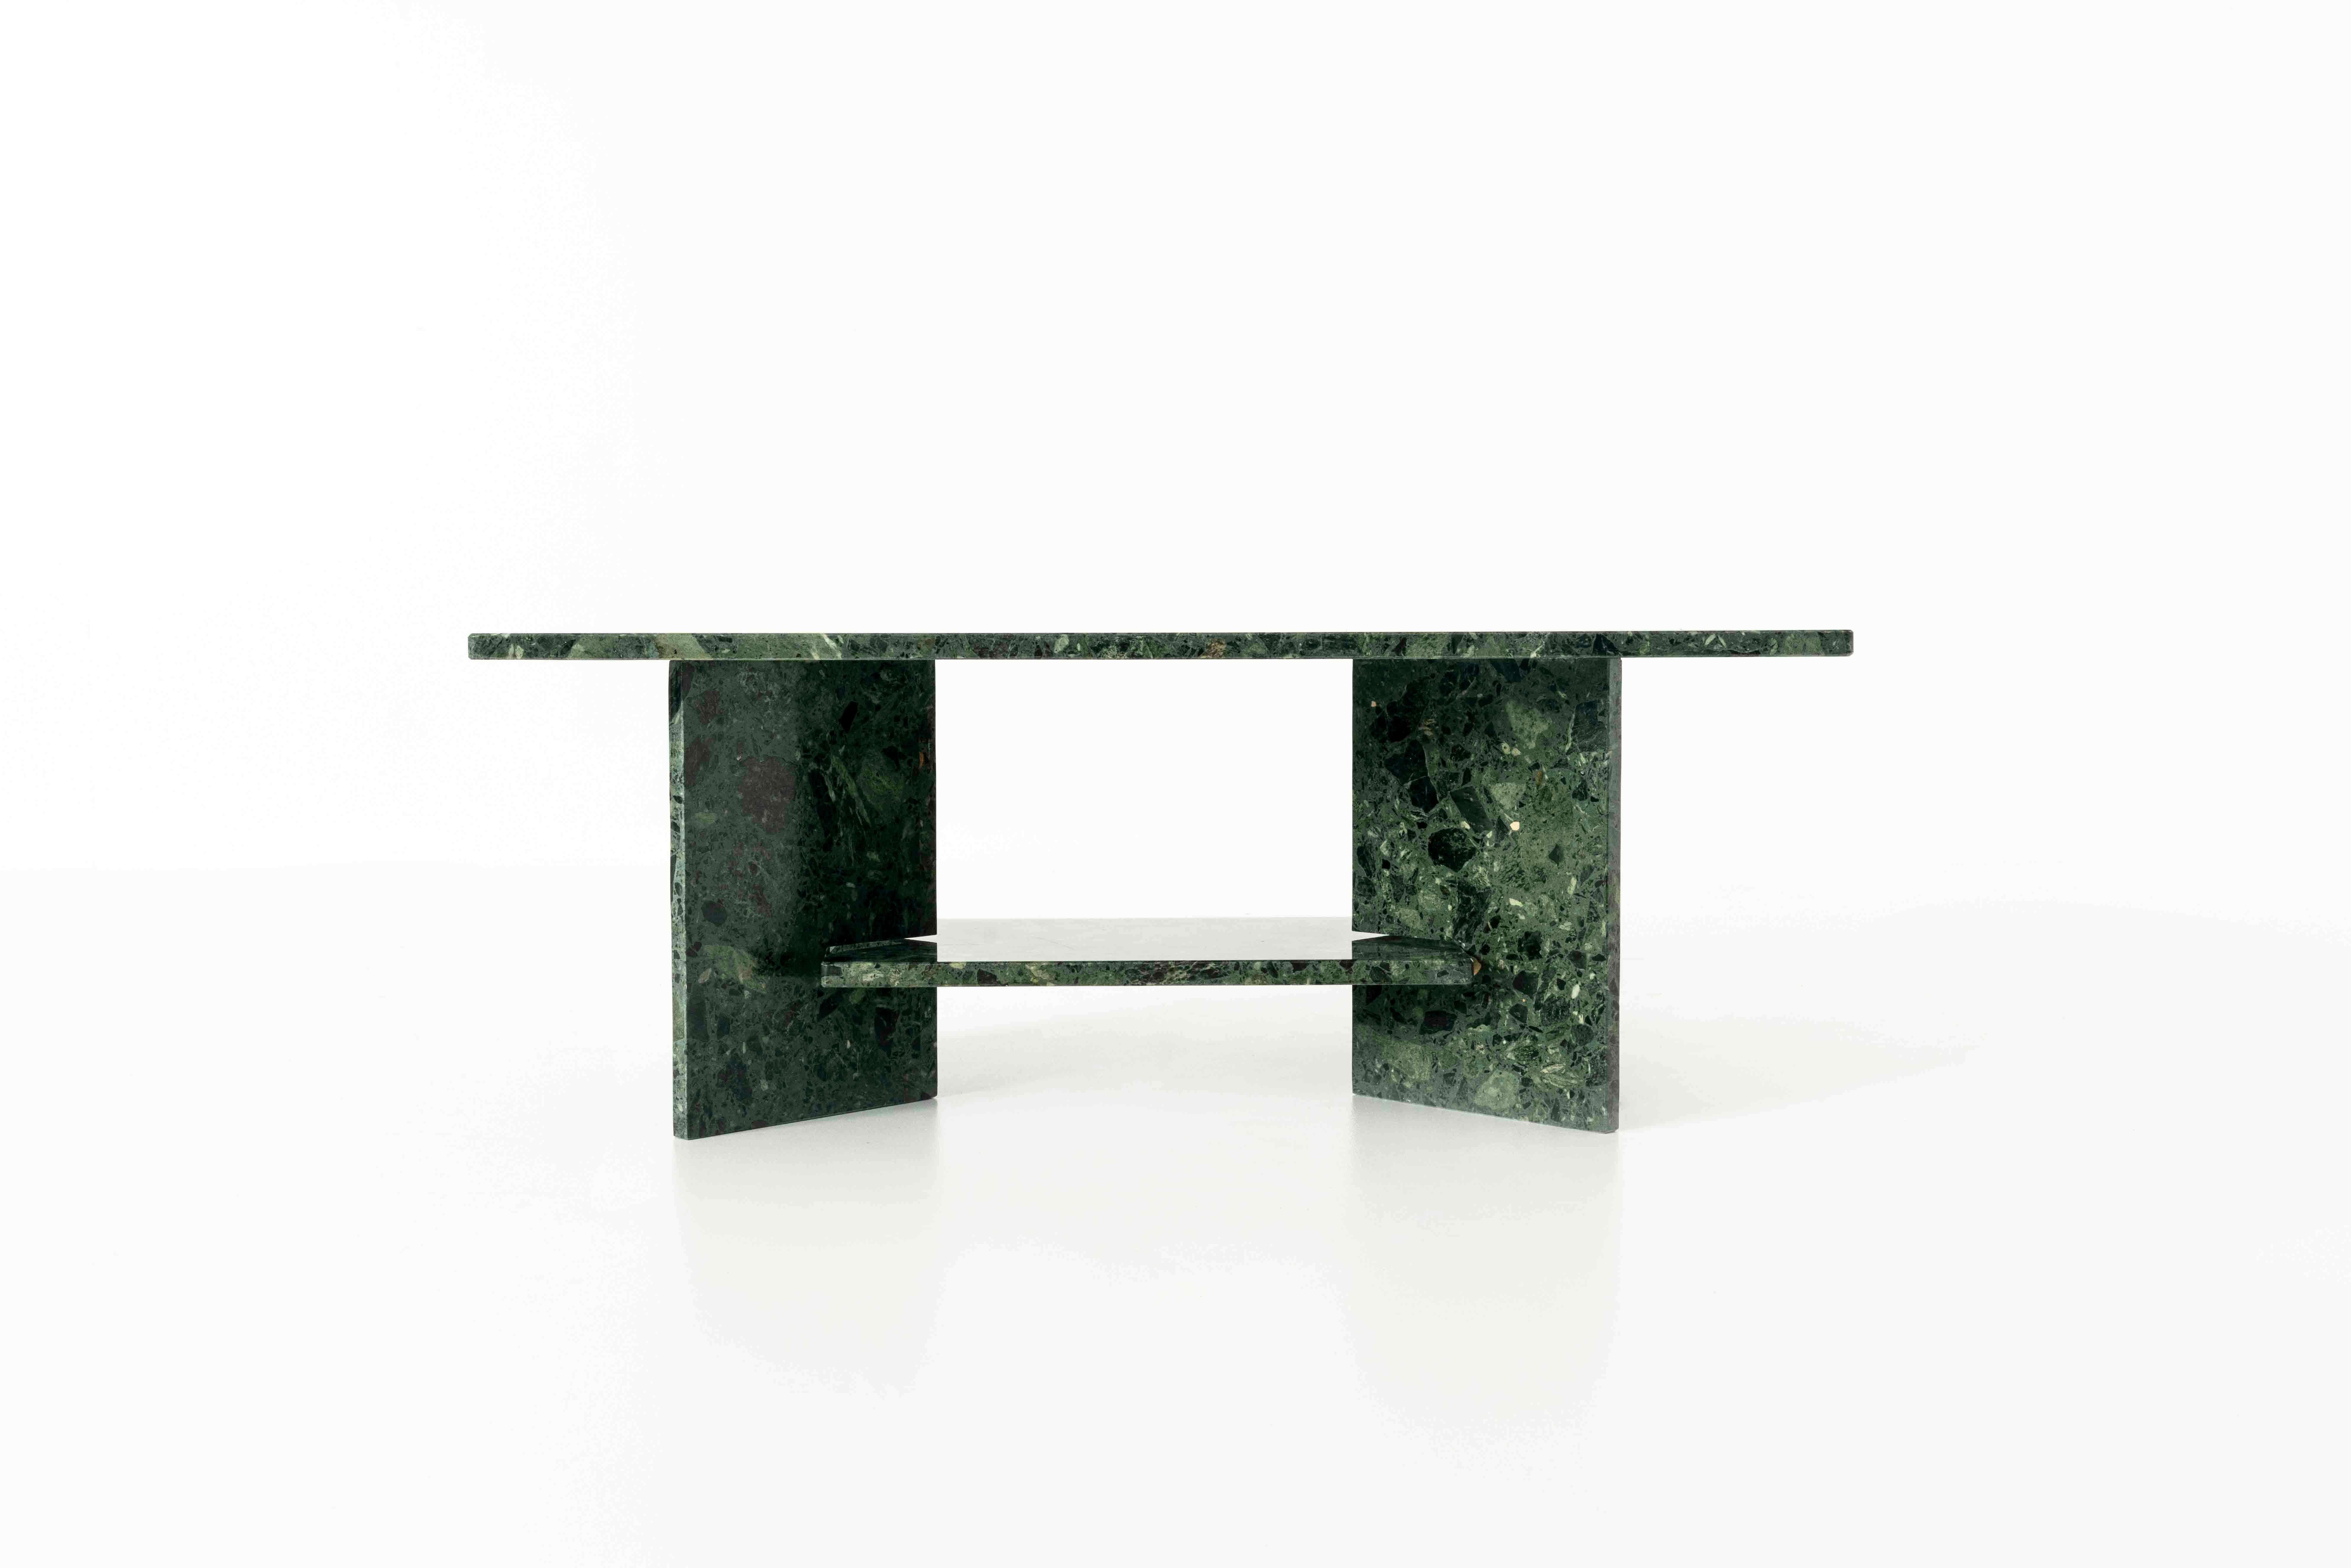 Superbe table basse en marbre vert. La table se compose de quatre éléments qui peuvent être assemblés. Les deux pieds triangulaires maintiennent le plateau inférieur de la table et le plateau complet est posé sur le dessus de la table. Le design est